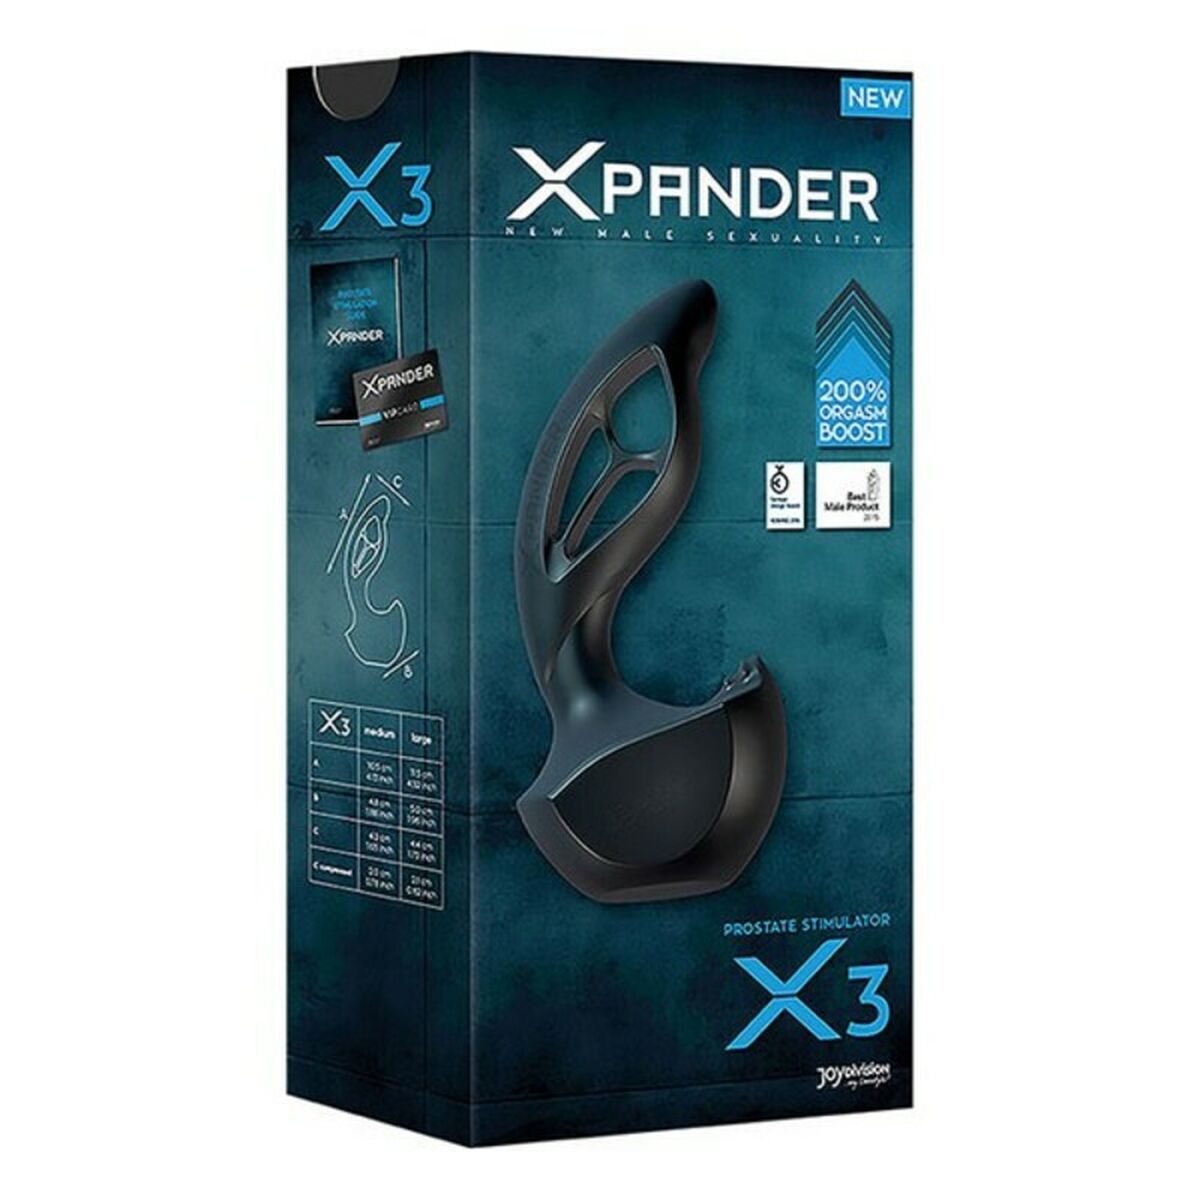 Kaufe Xpander X3 Silikon Noir Prostatastimulator Joydivision Xpander X3 Schwarz bei AWK Flagship um € 49.00